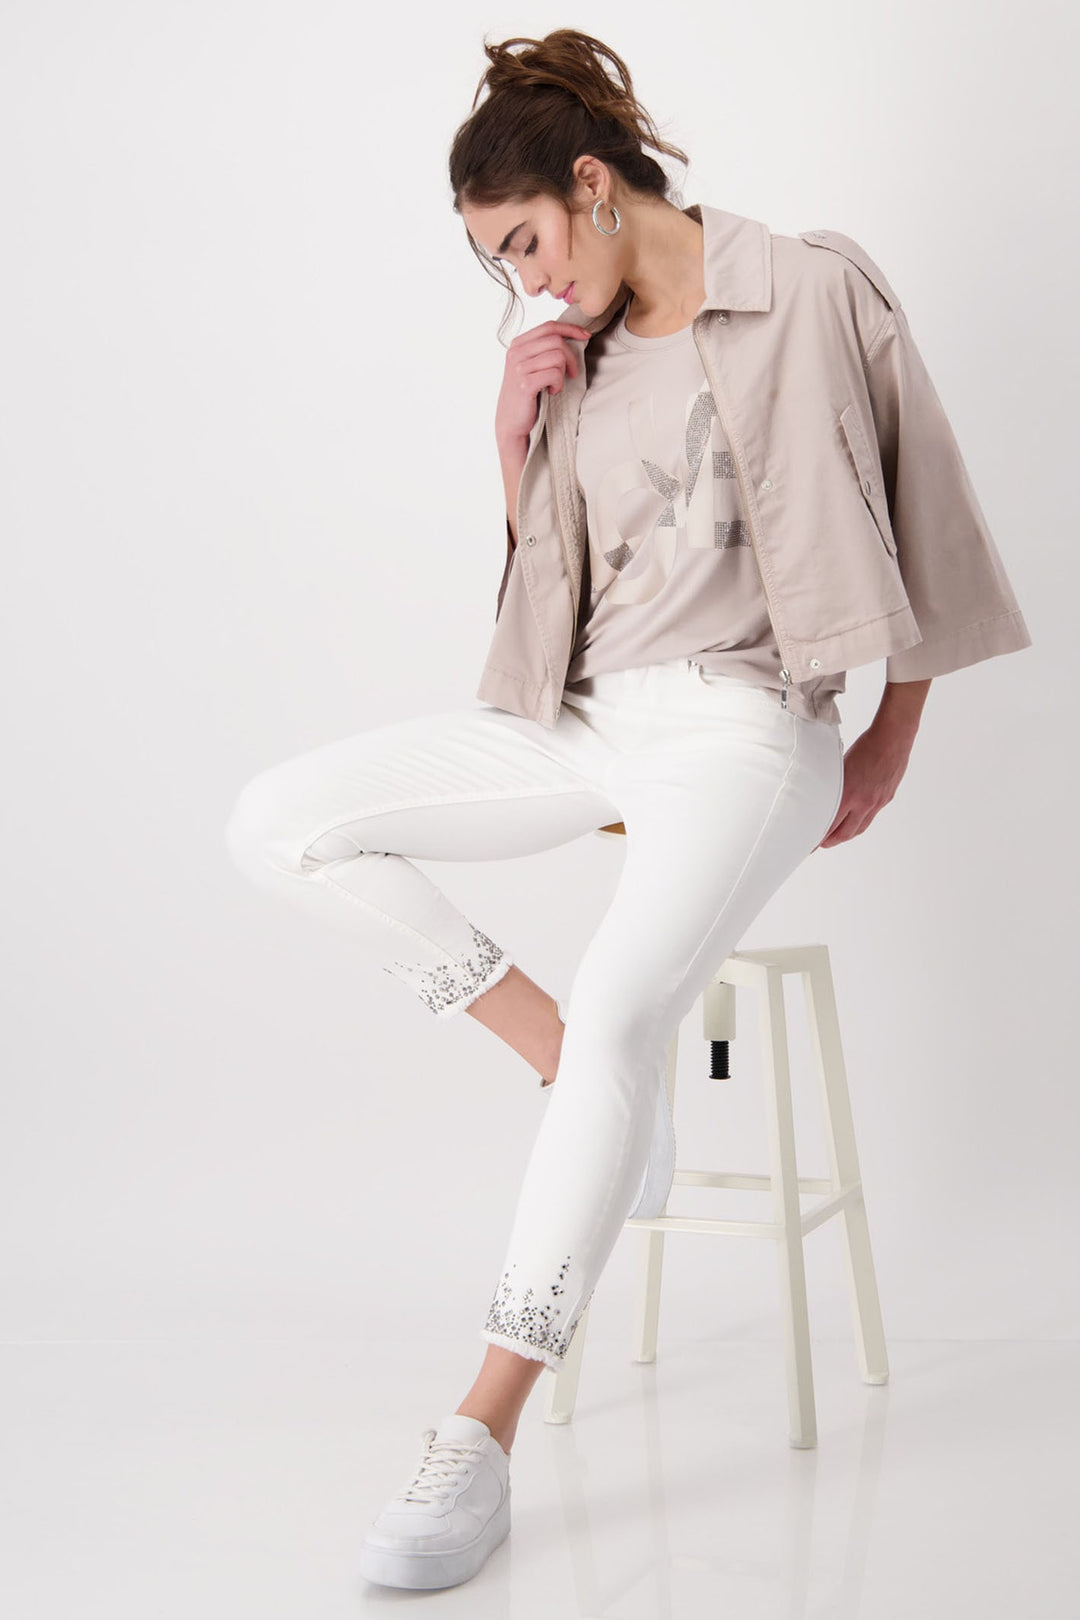 Monari 408395 Off White Embellished Hem Jeans - Dotique